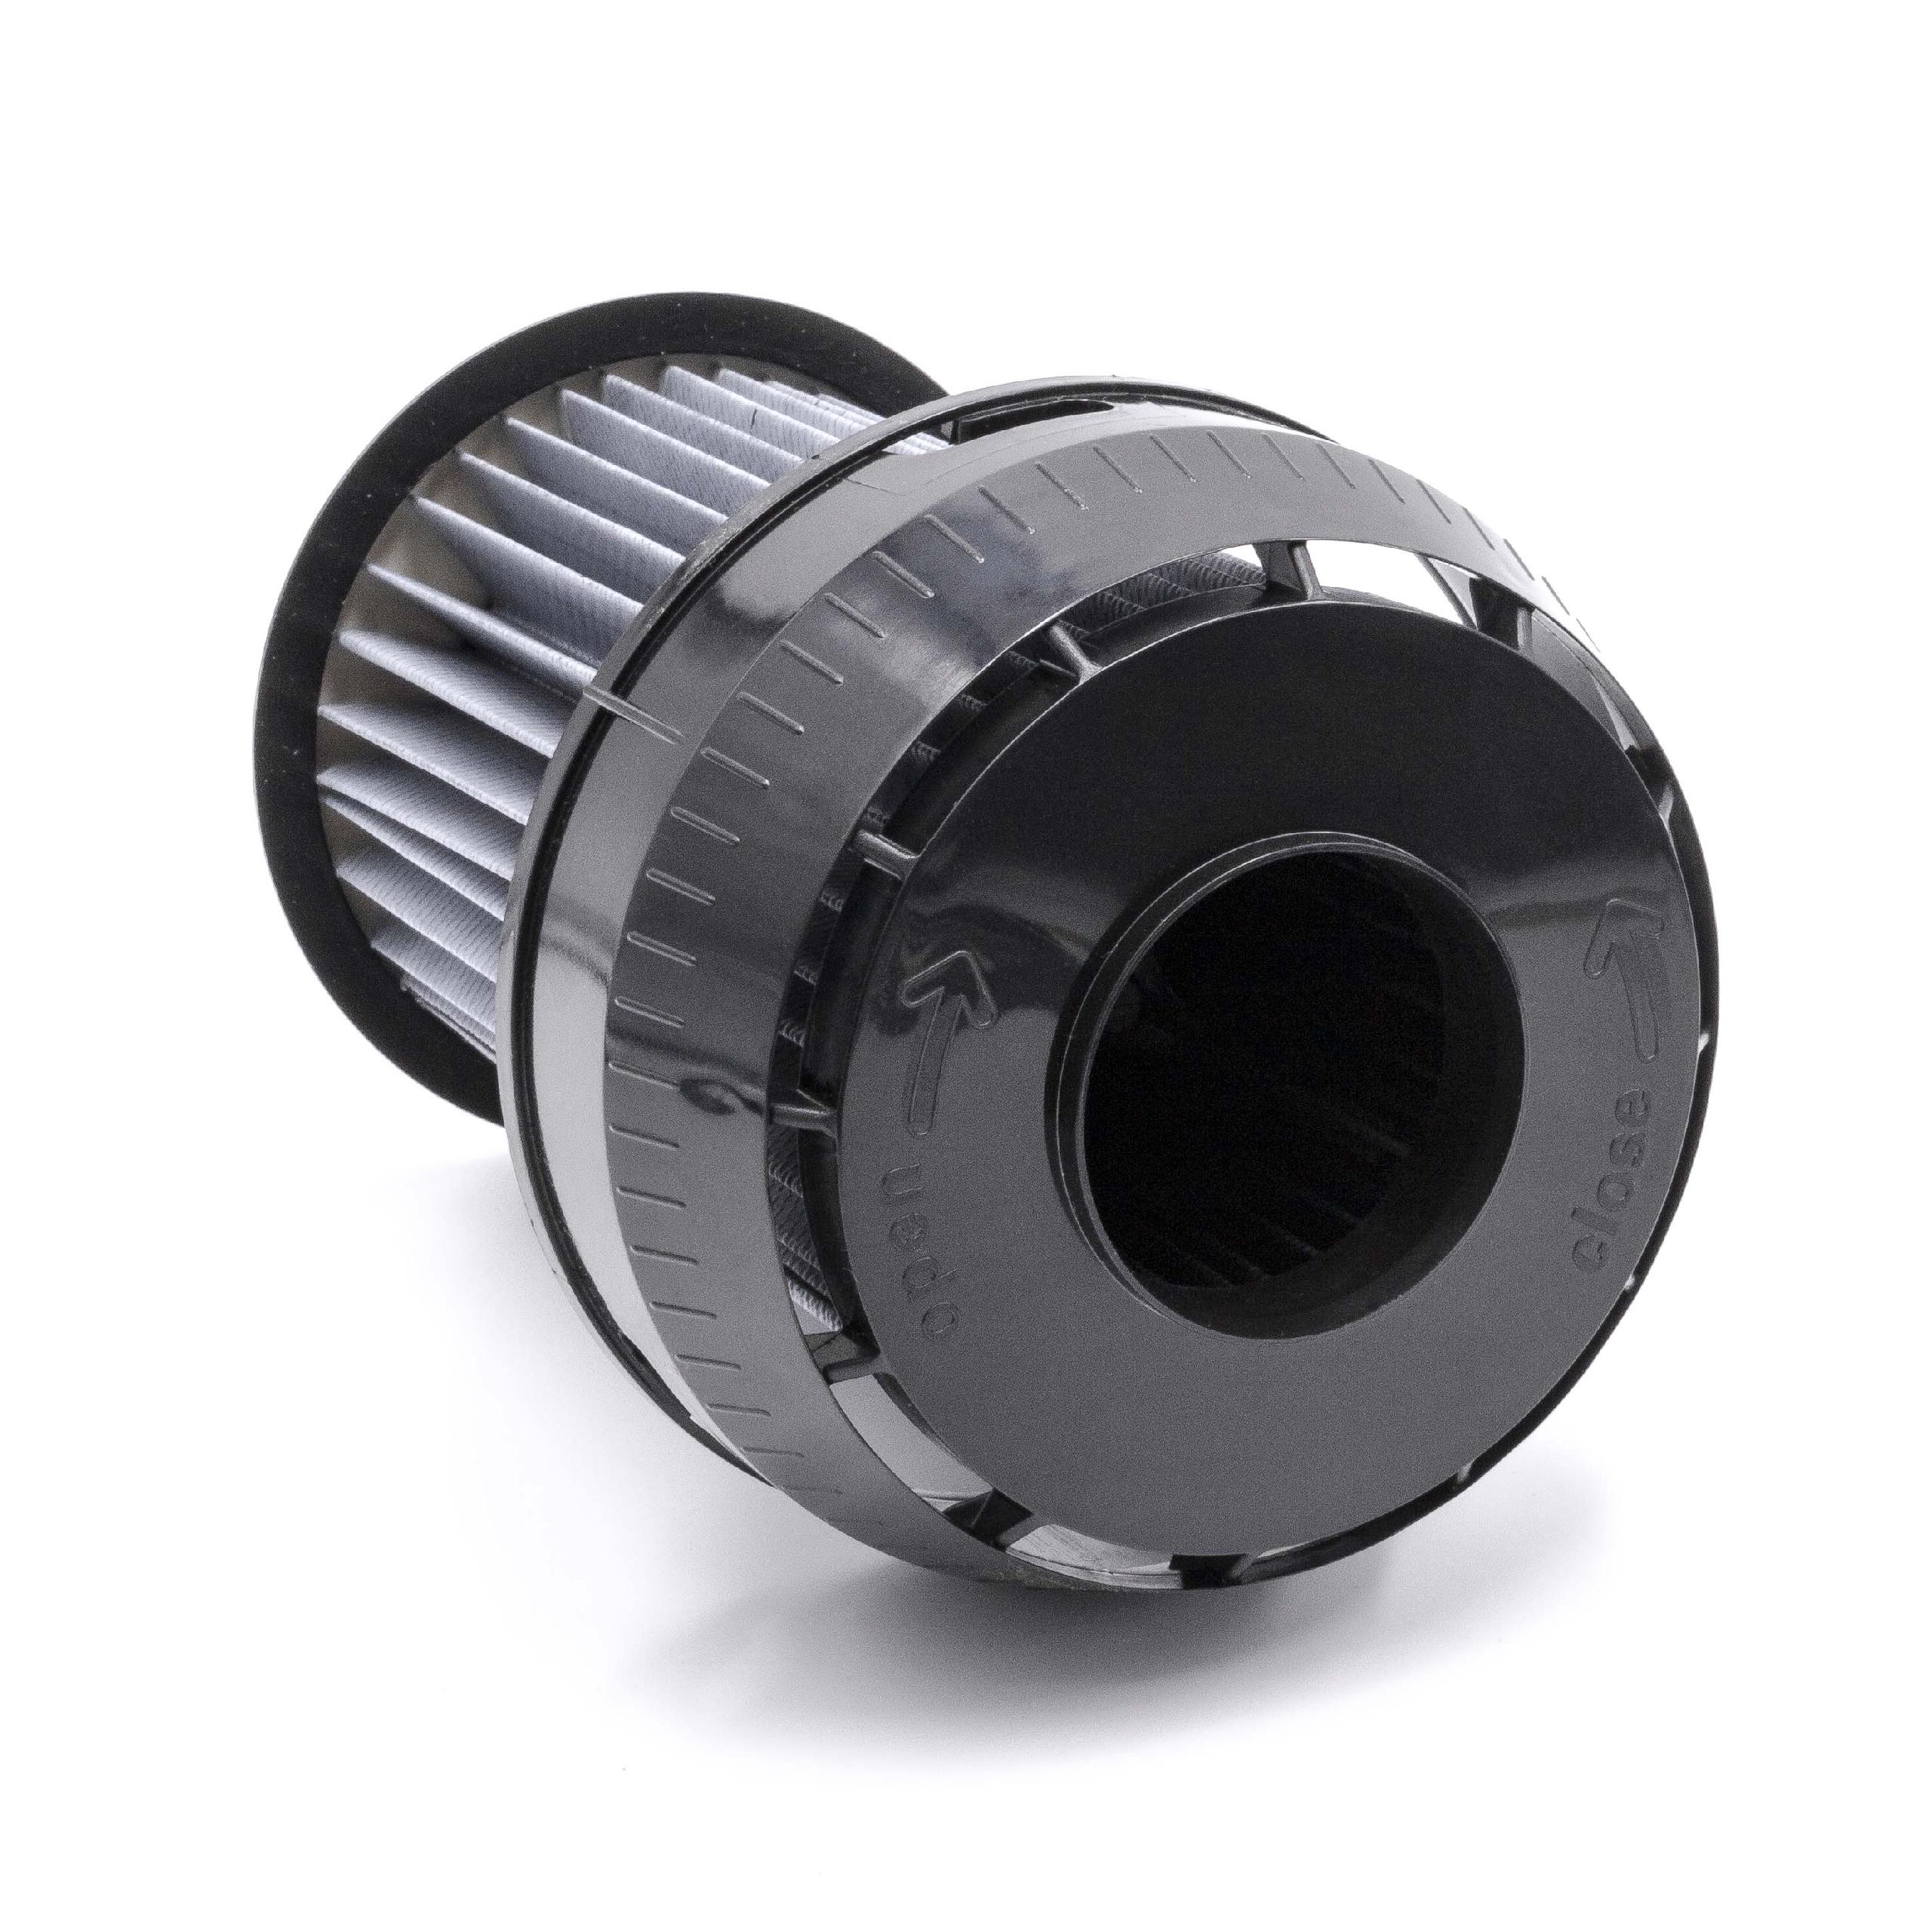 2x Filtro reemplaza Bosch 2609256d46, 00649841 para aspiradora - filtro laminar, negro